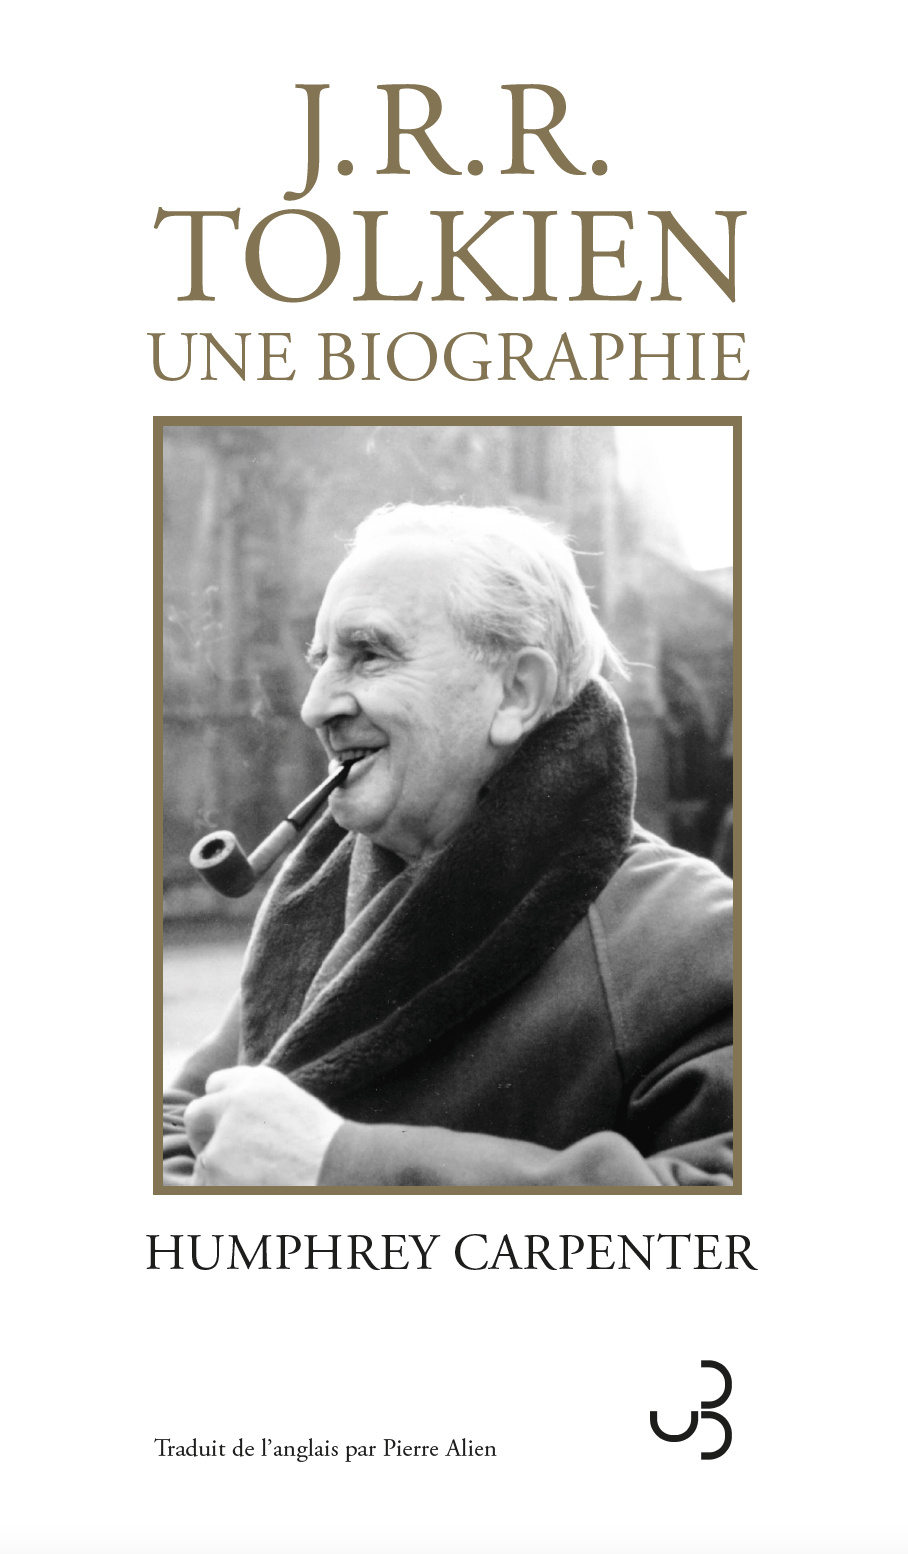 J.R.R. Tolkien – une biographie de Humphrey Carpenter